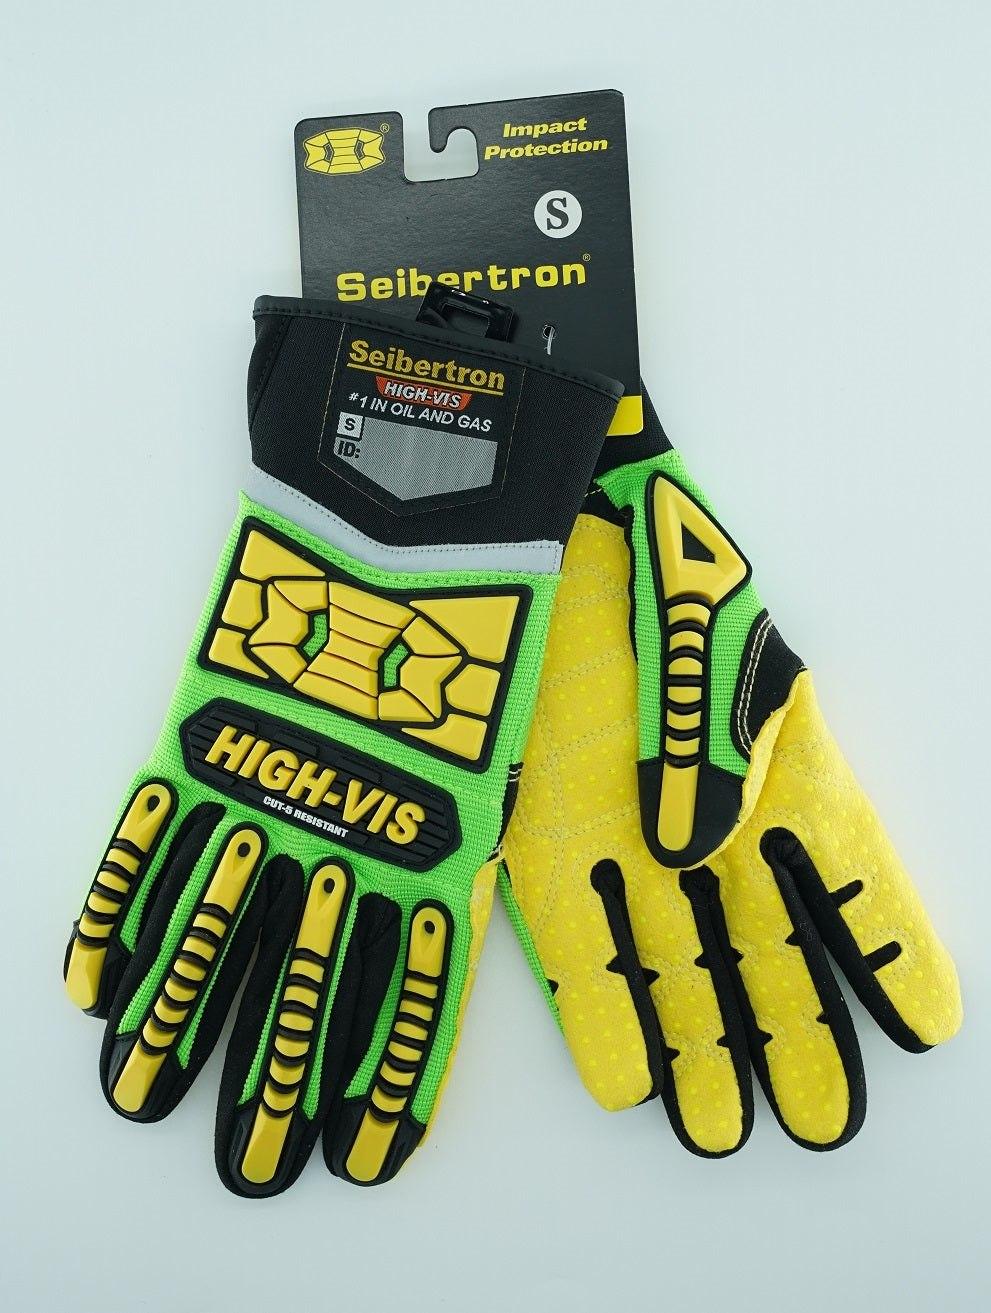 Mechanix Wear - Cut, Puncture & Abrasive-Resistant Gloves: Size XL